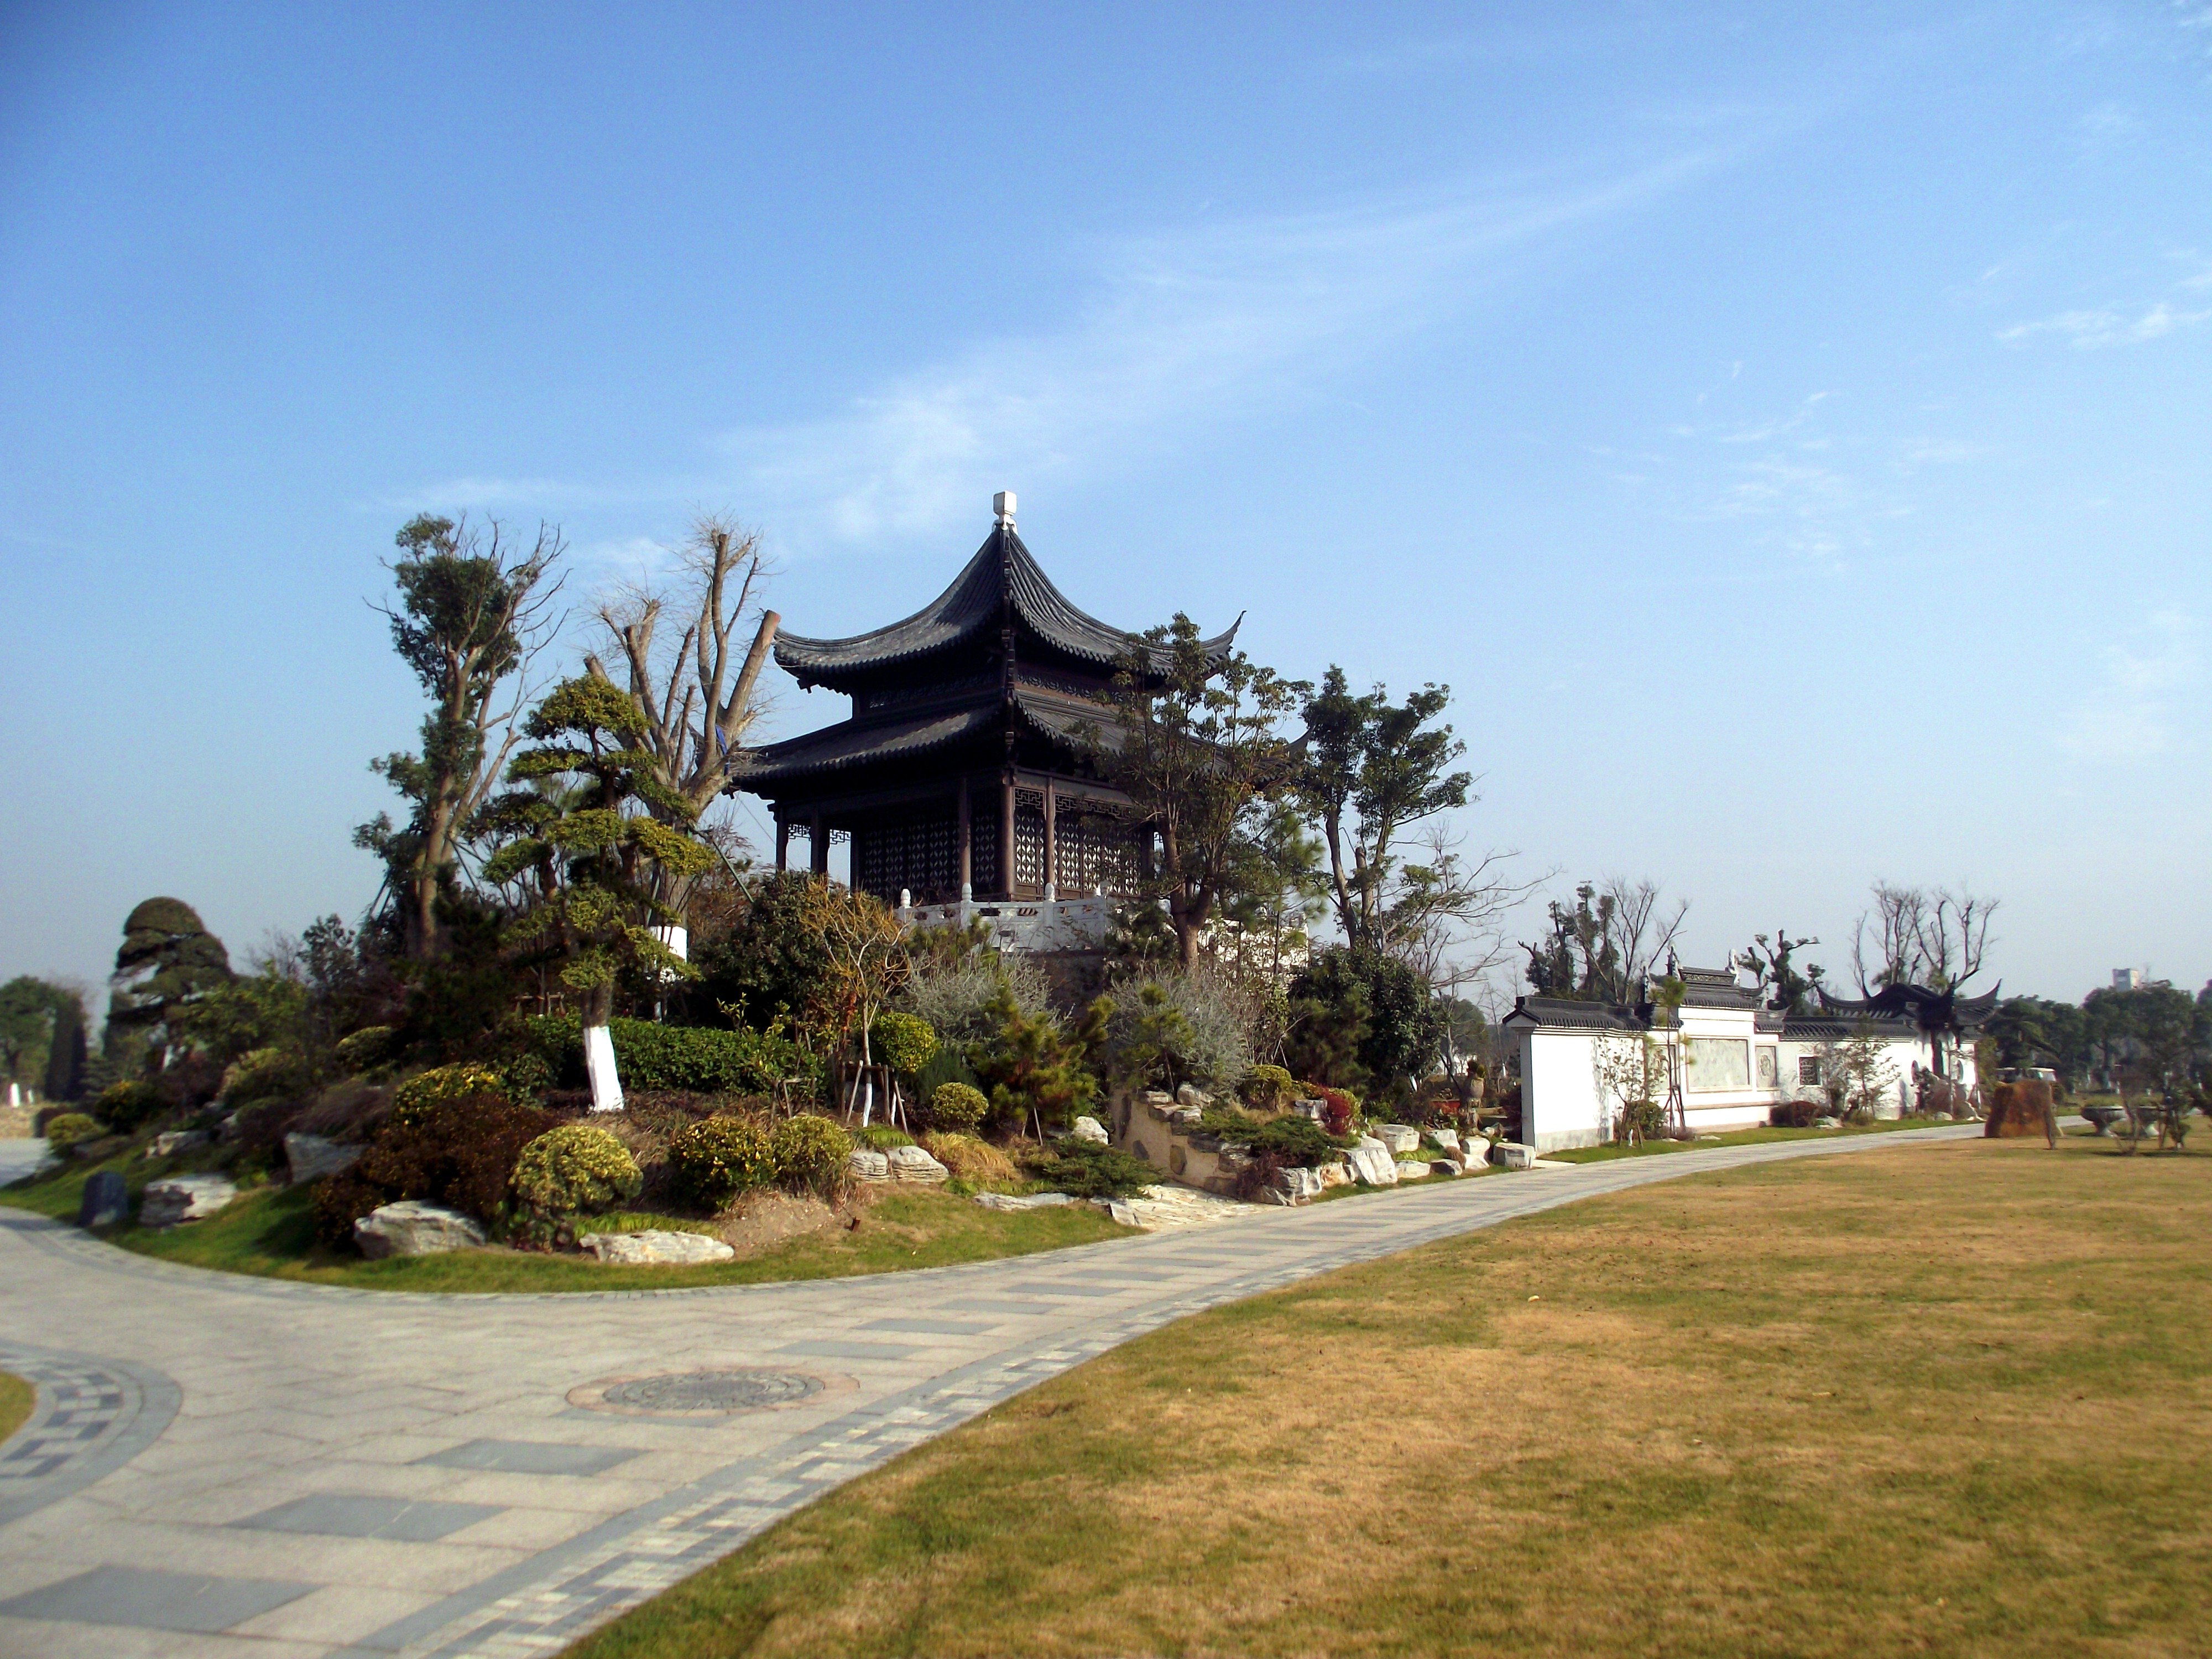 海湾园里设有上海知青博物馆,知青广场,通过参观浏览可以了解